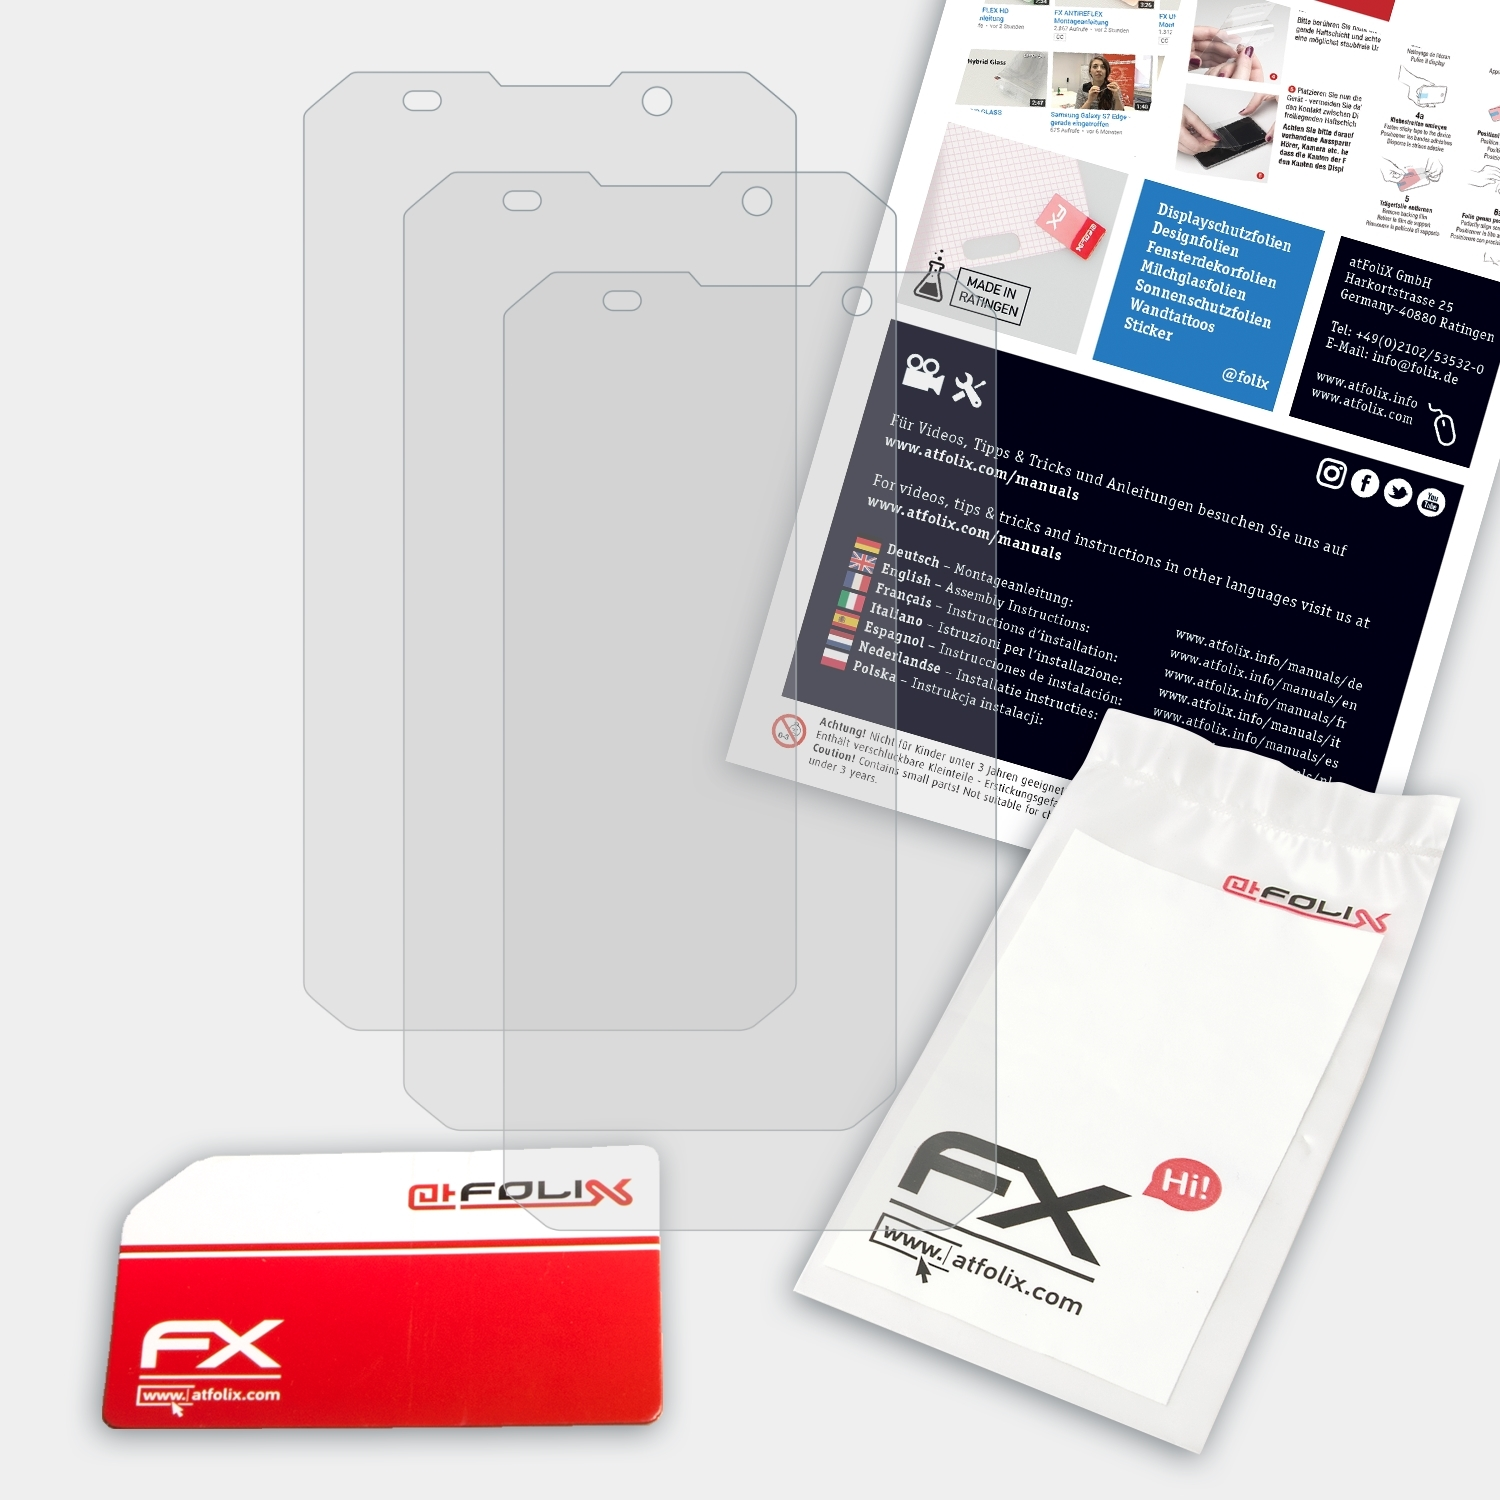 ATFOLIX 3x FX-Antireflex Displayschutz(für E&L W9)